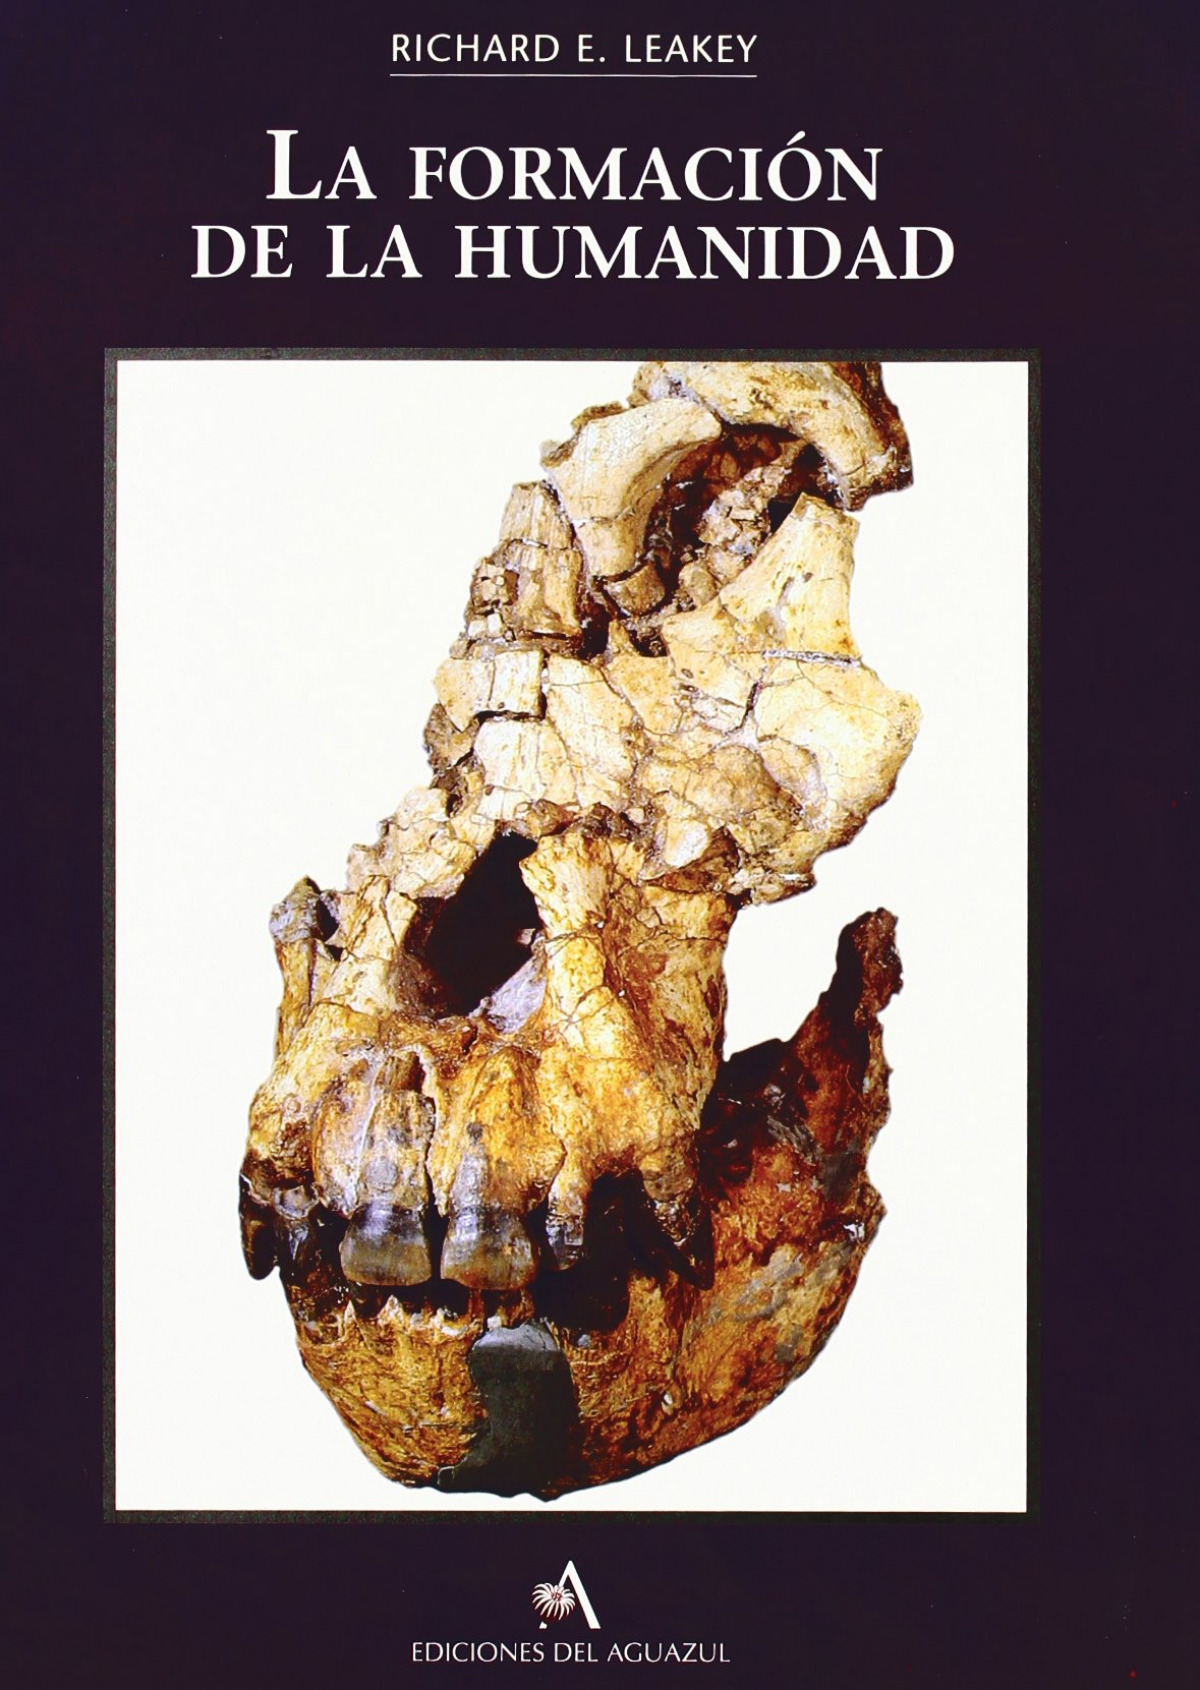 La formacion de la humanidad - Leakey, Richard E.